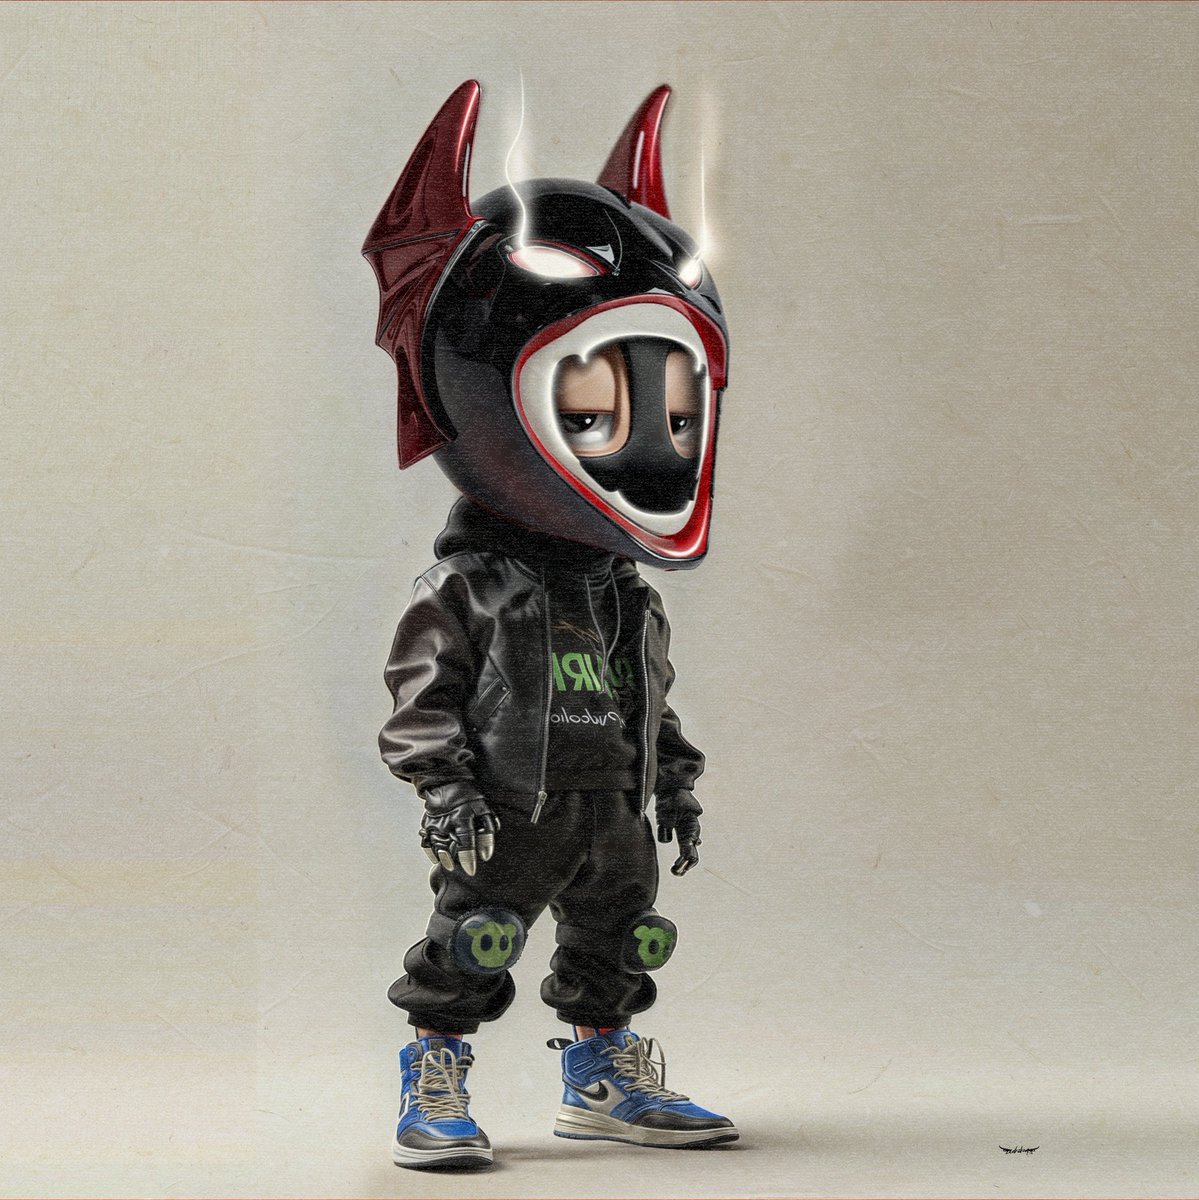 AKCB custom helmet series no:7
@akidcalledbeast
#arttoy #vinyltoys #characterdesign